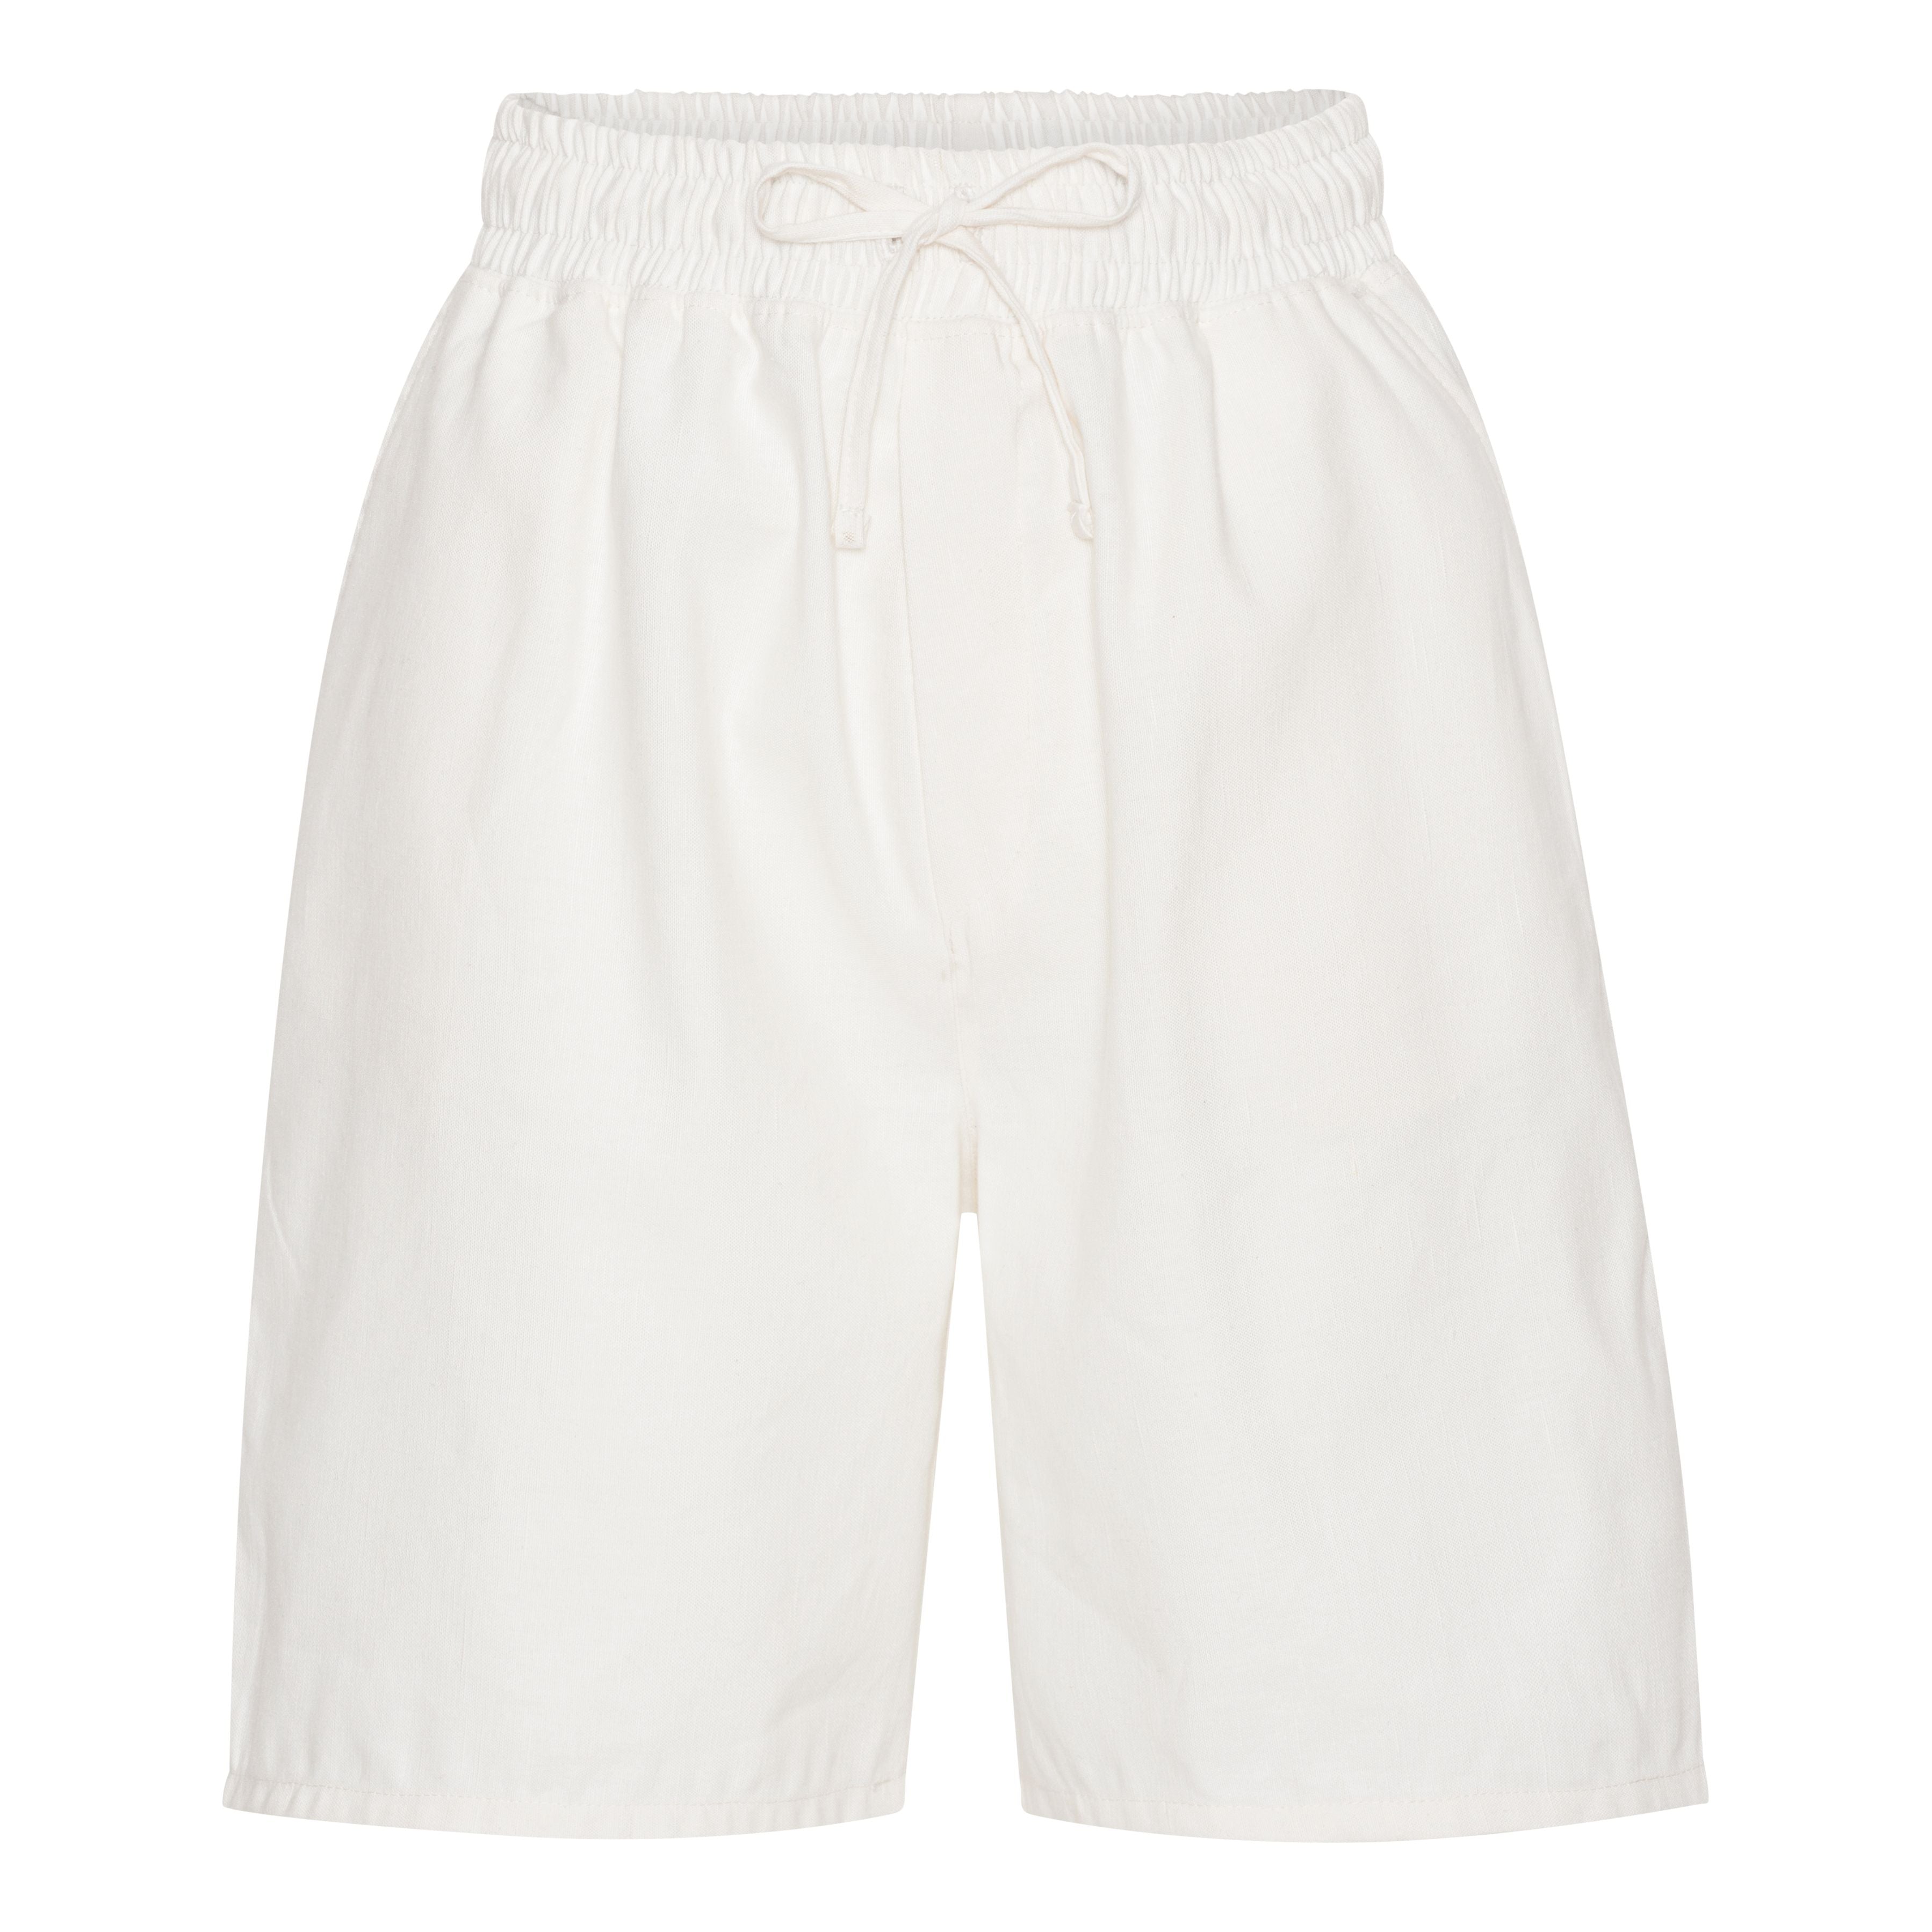 Off-white linen shorts